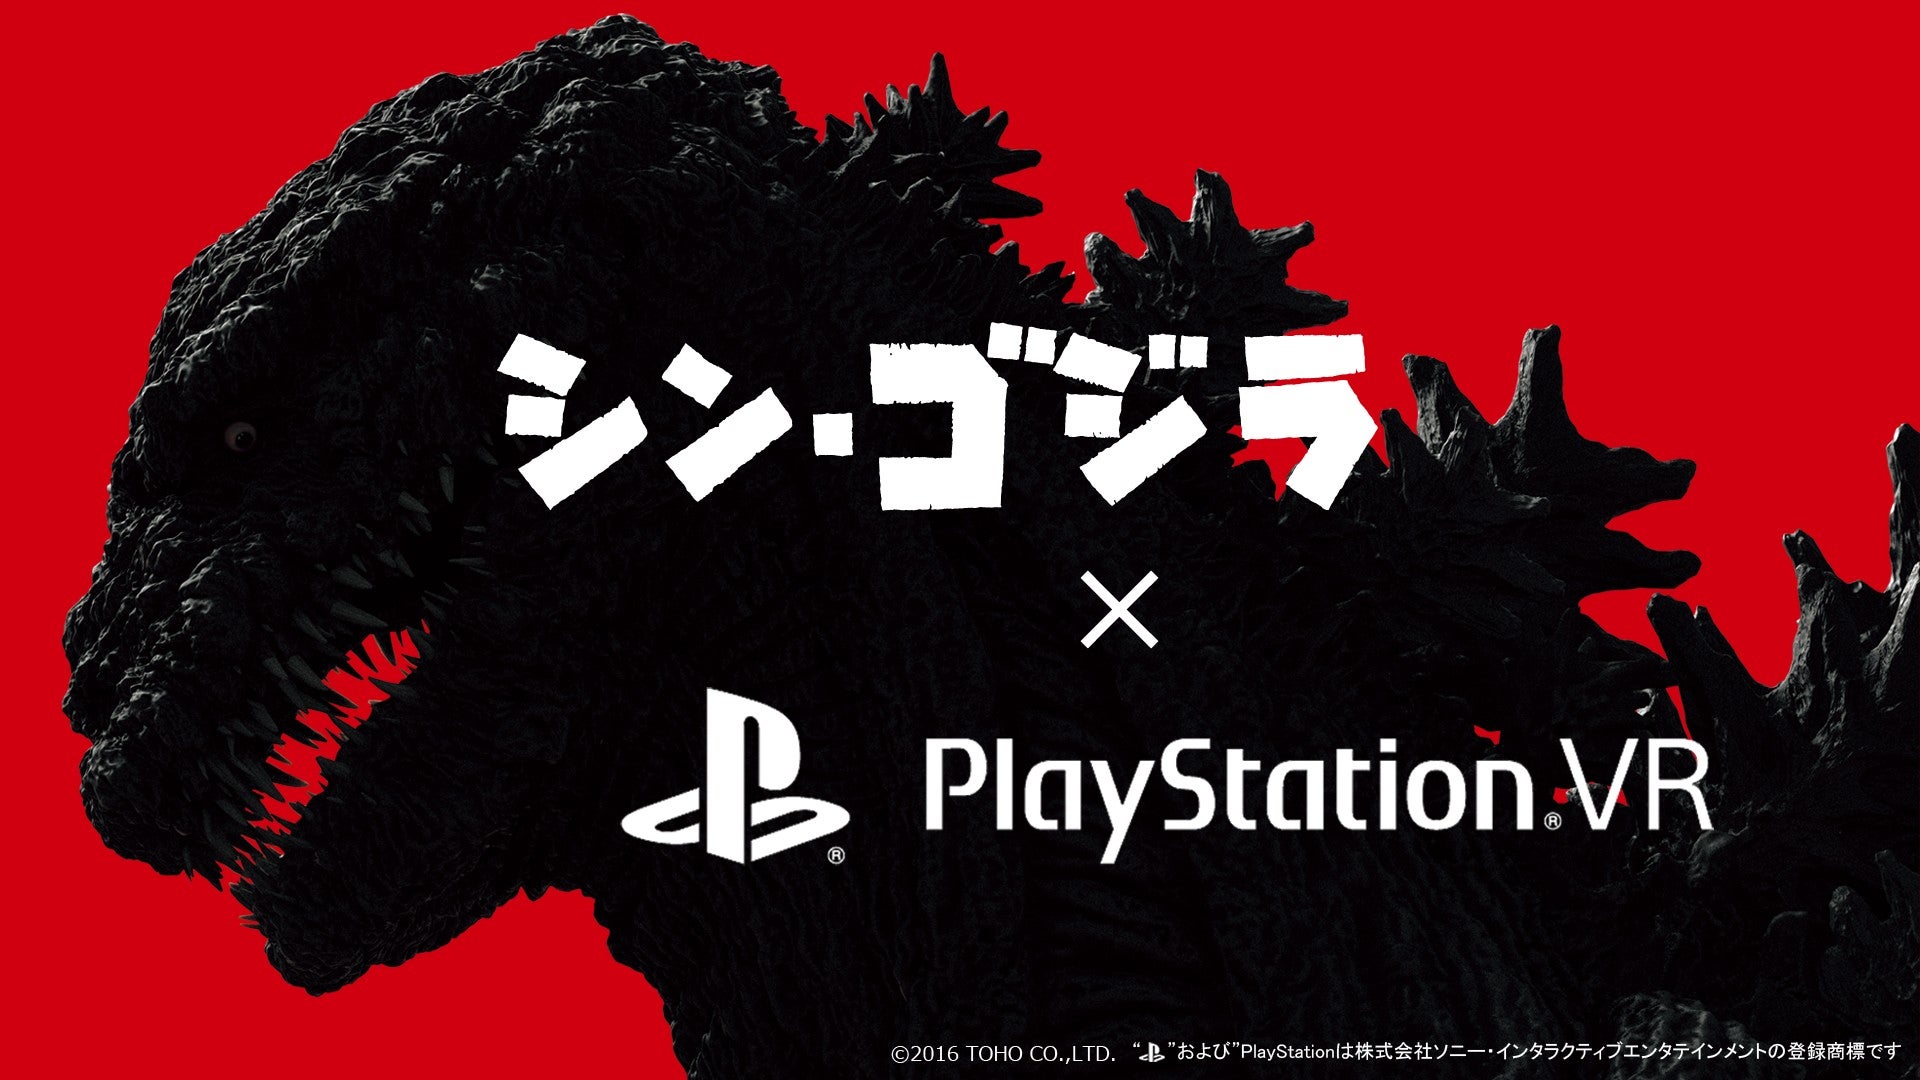 Shin Godzilla is getting a PlayStation VR demo | VG247